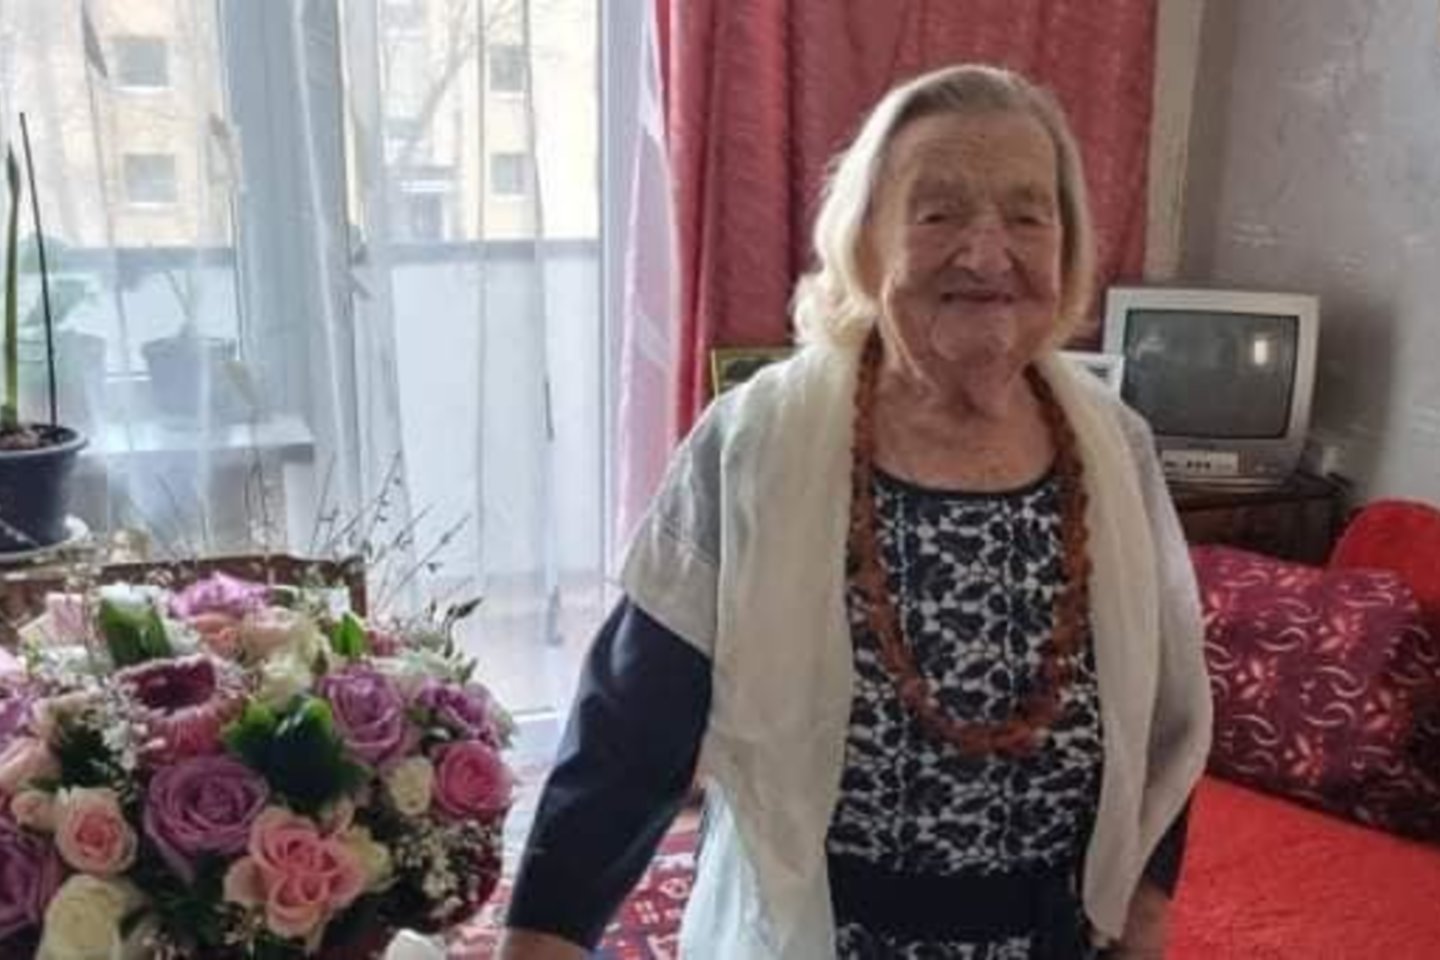  Adelė Čižauskienė 70 metų gyvena Palangoje.<br> Facebook nuotr.